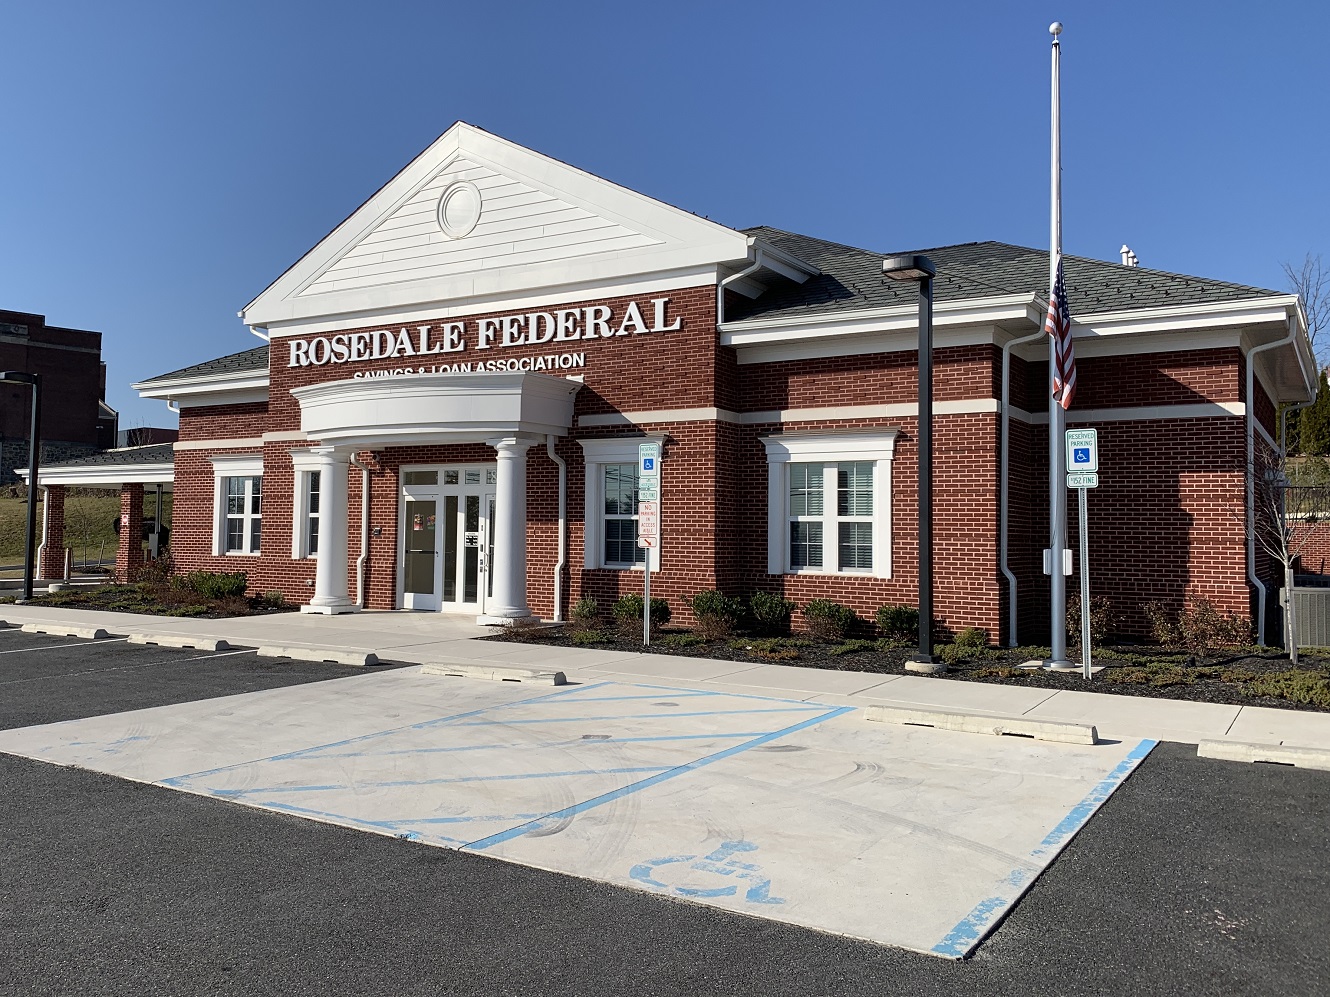 Rosedale Federal Savings & Loan Association